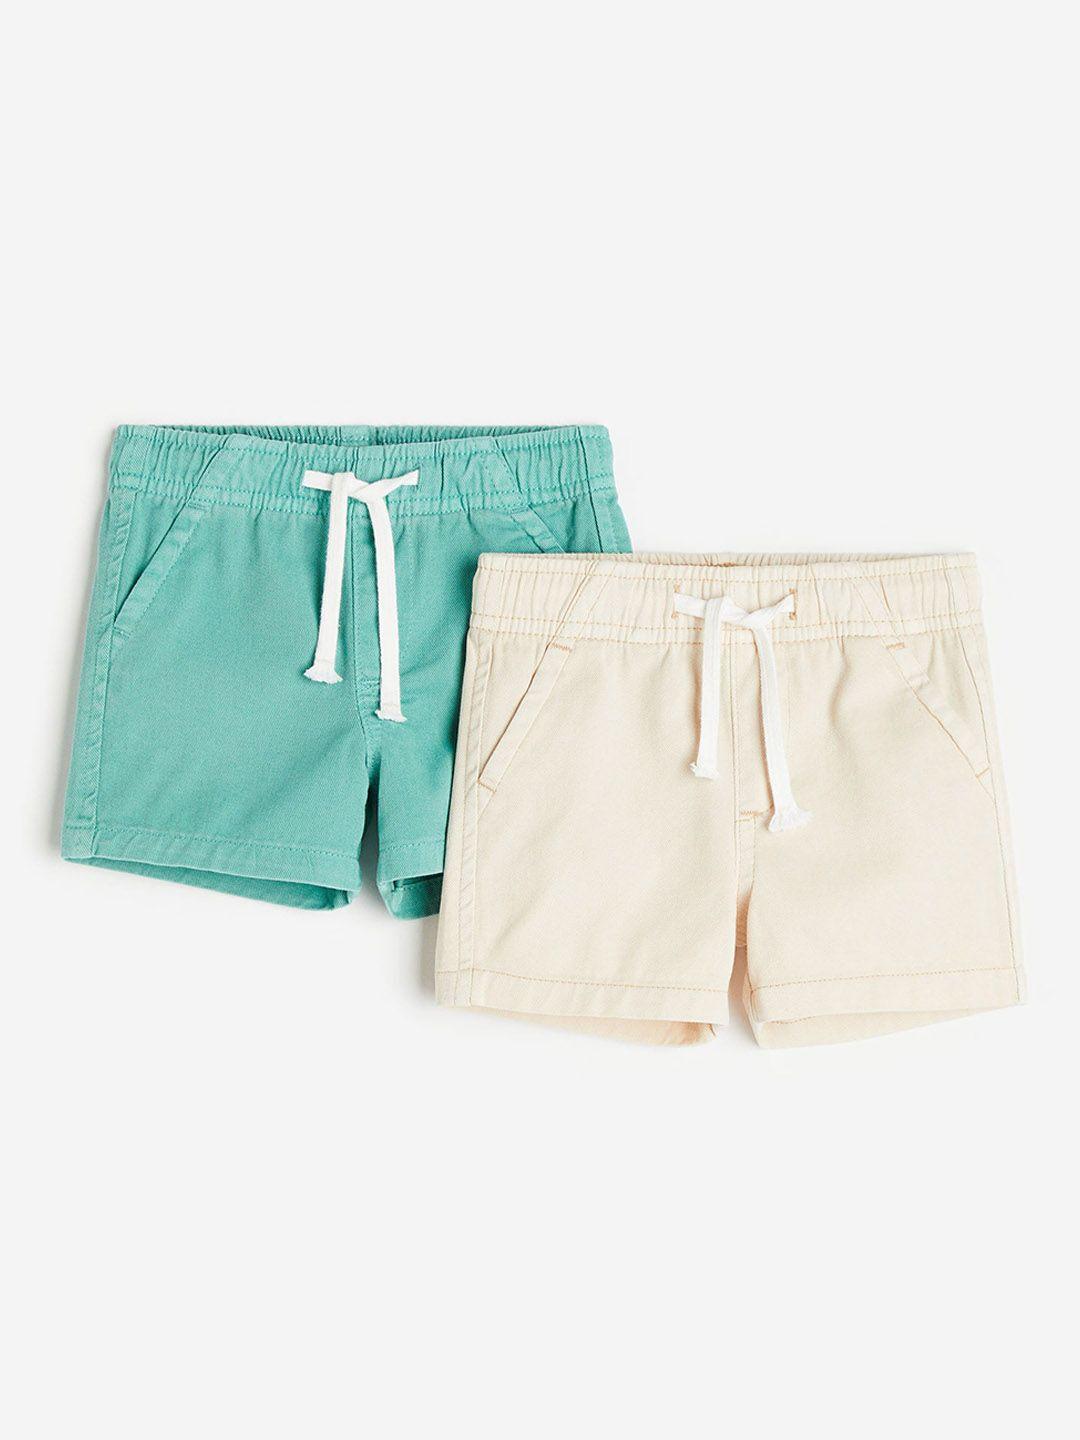 h&m boys 2-pack denim shorts